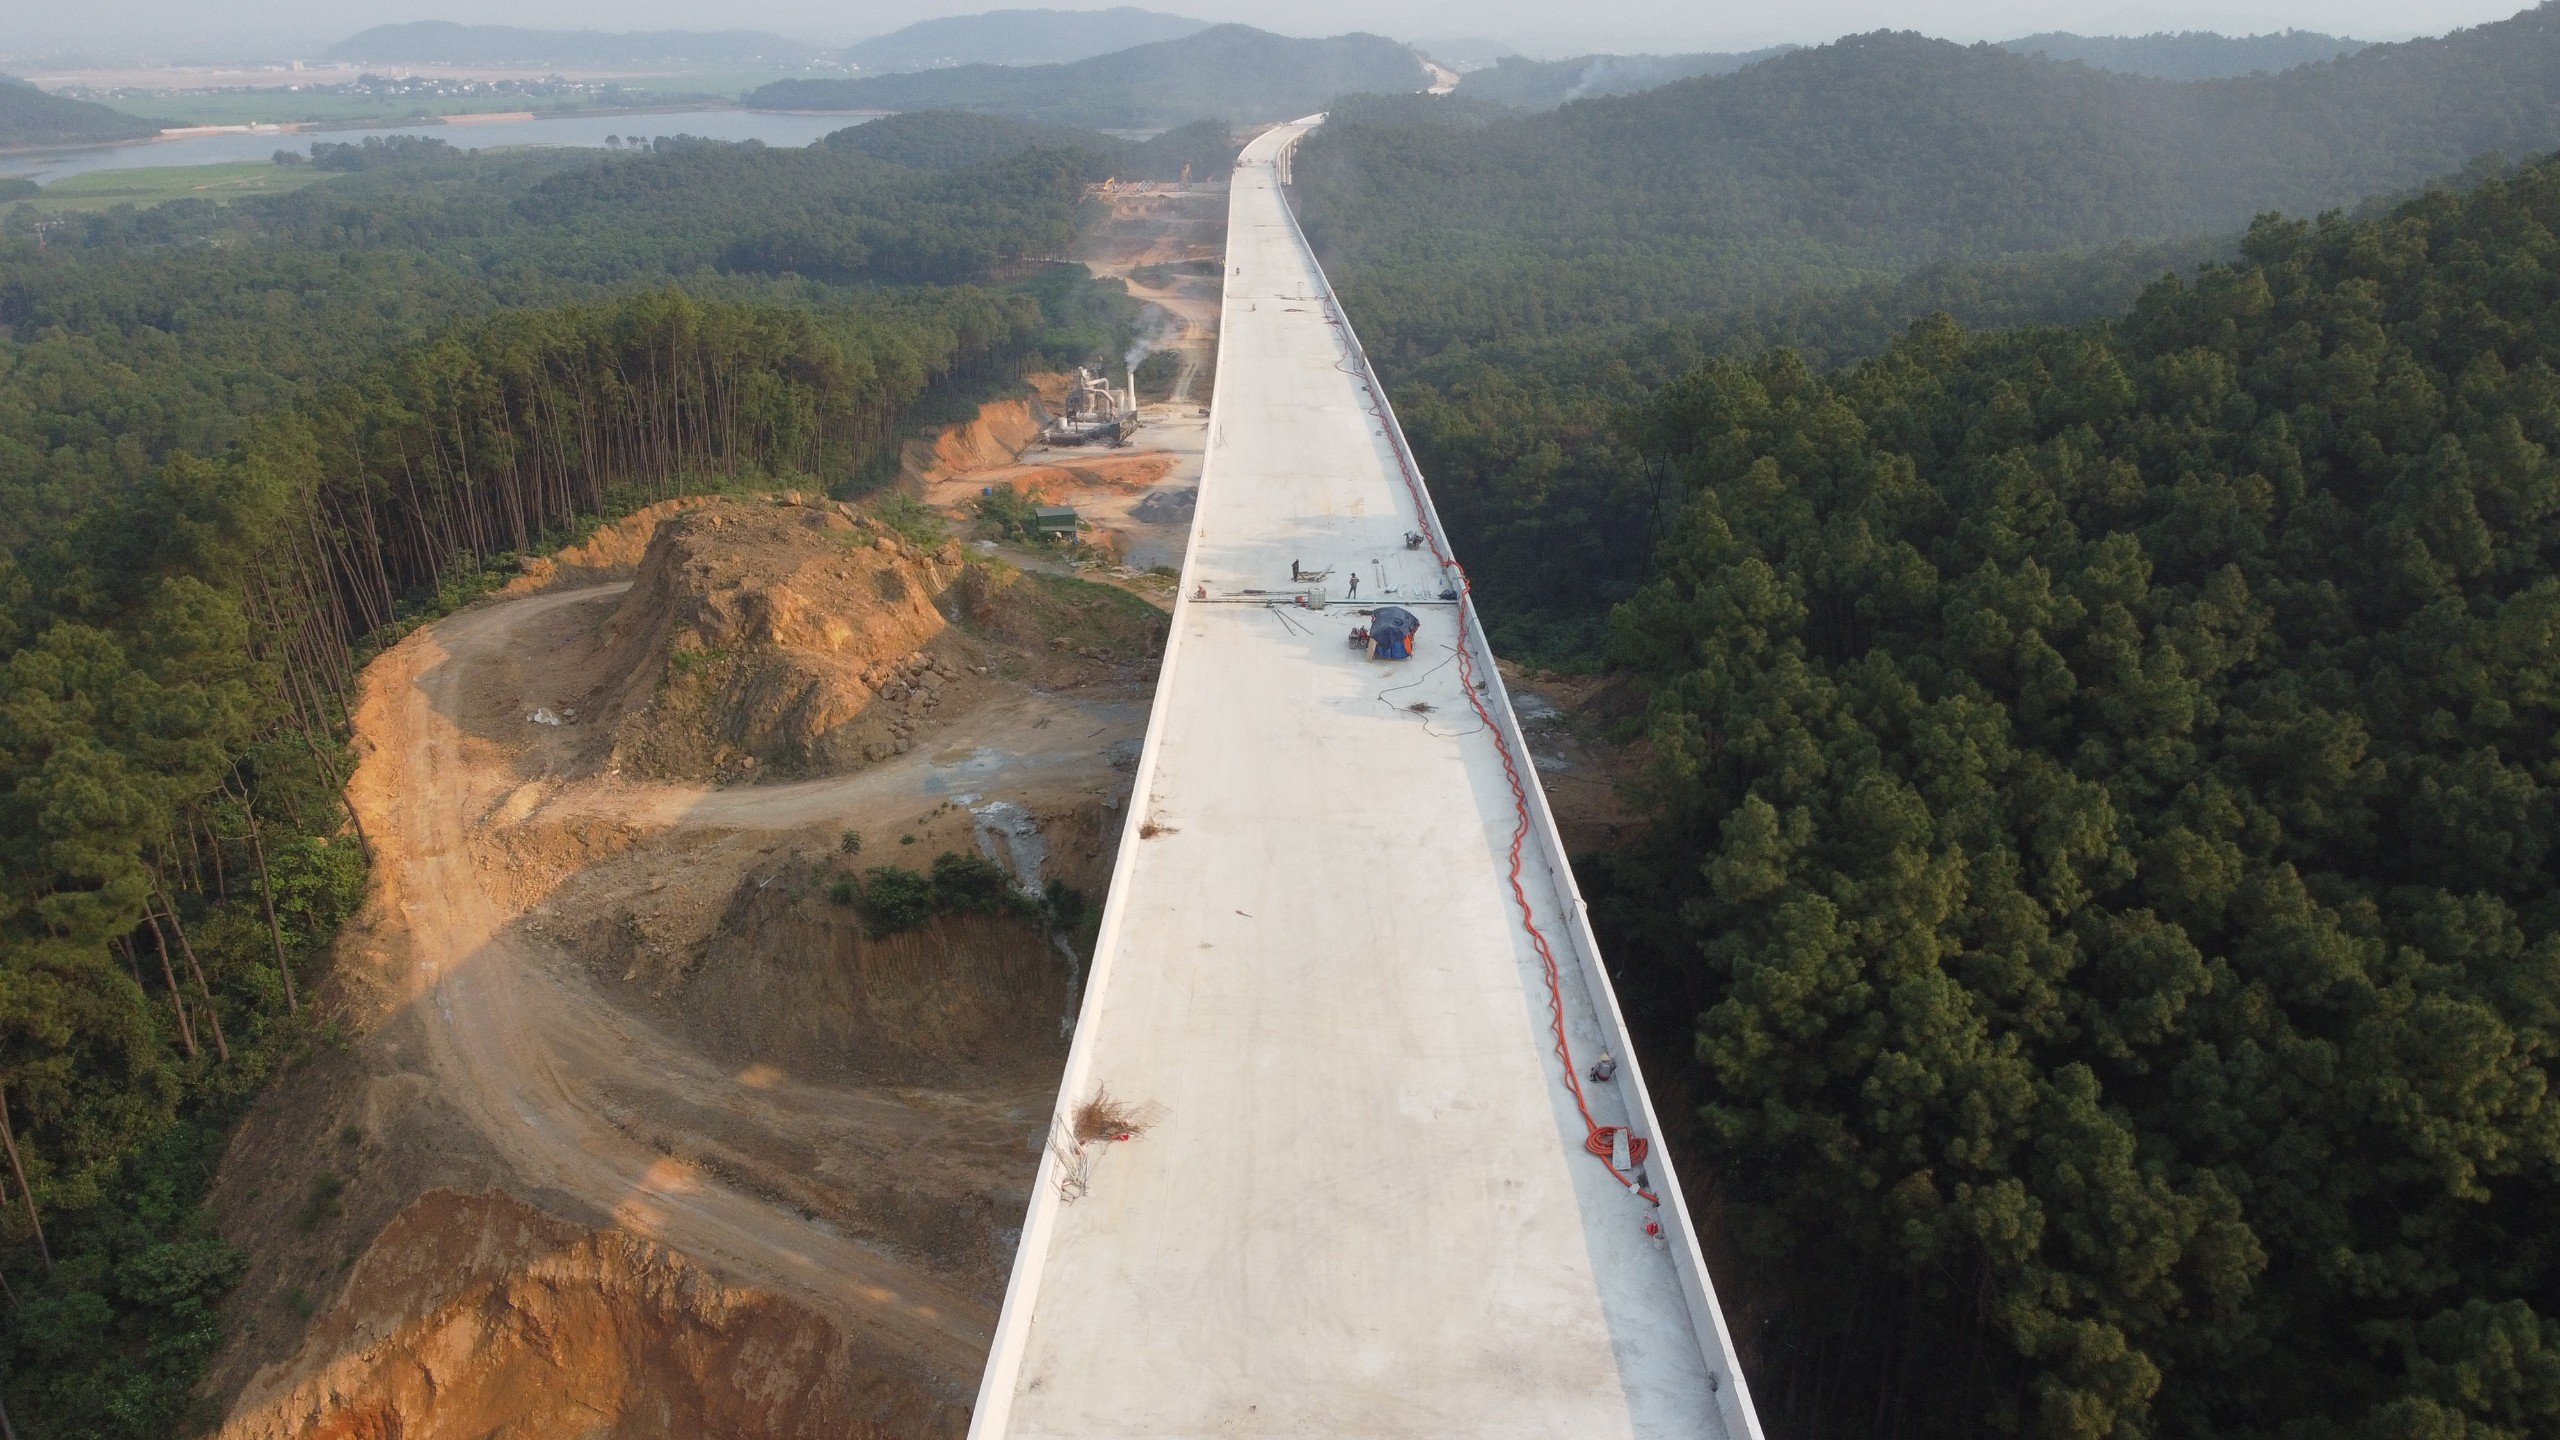 Cầu Thần Vũ 2 nối liền Thần Vũ 1, gồm 31 trụ, trụ cao nhất gần 50 m, thi công từ đầu năm 2022. Cầu nằm ở vị trí núi rừng núi hiểm trở nên nên tiến độ thi công chậm hơn so với các công trình khác trên tuyến.